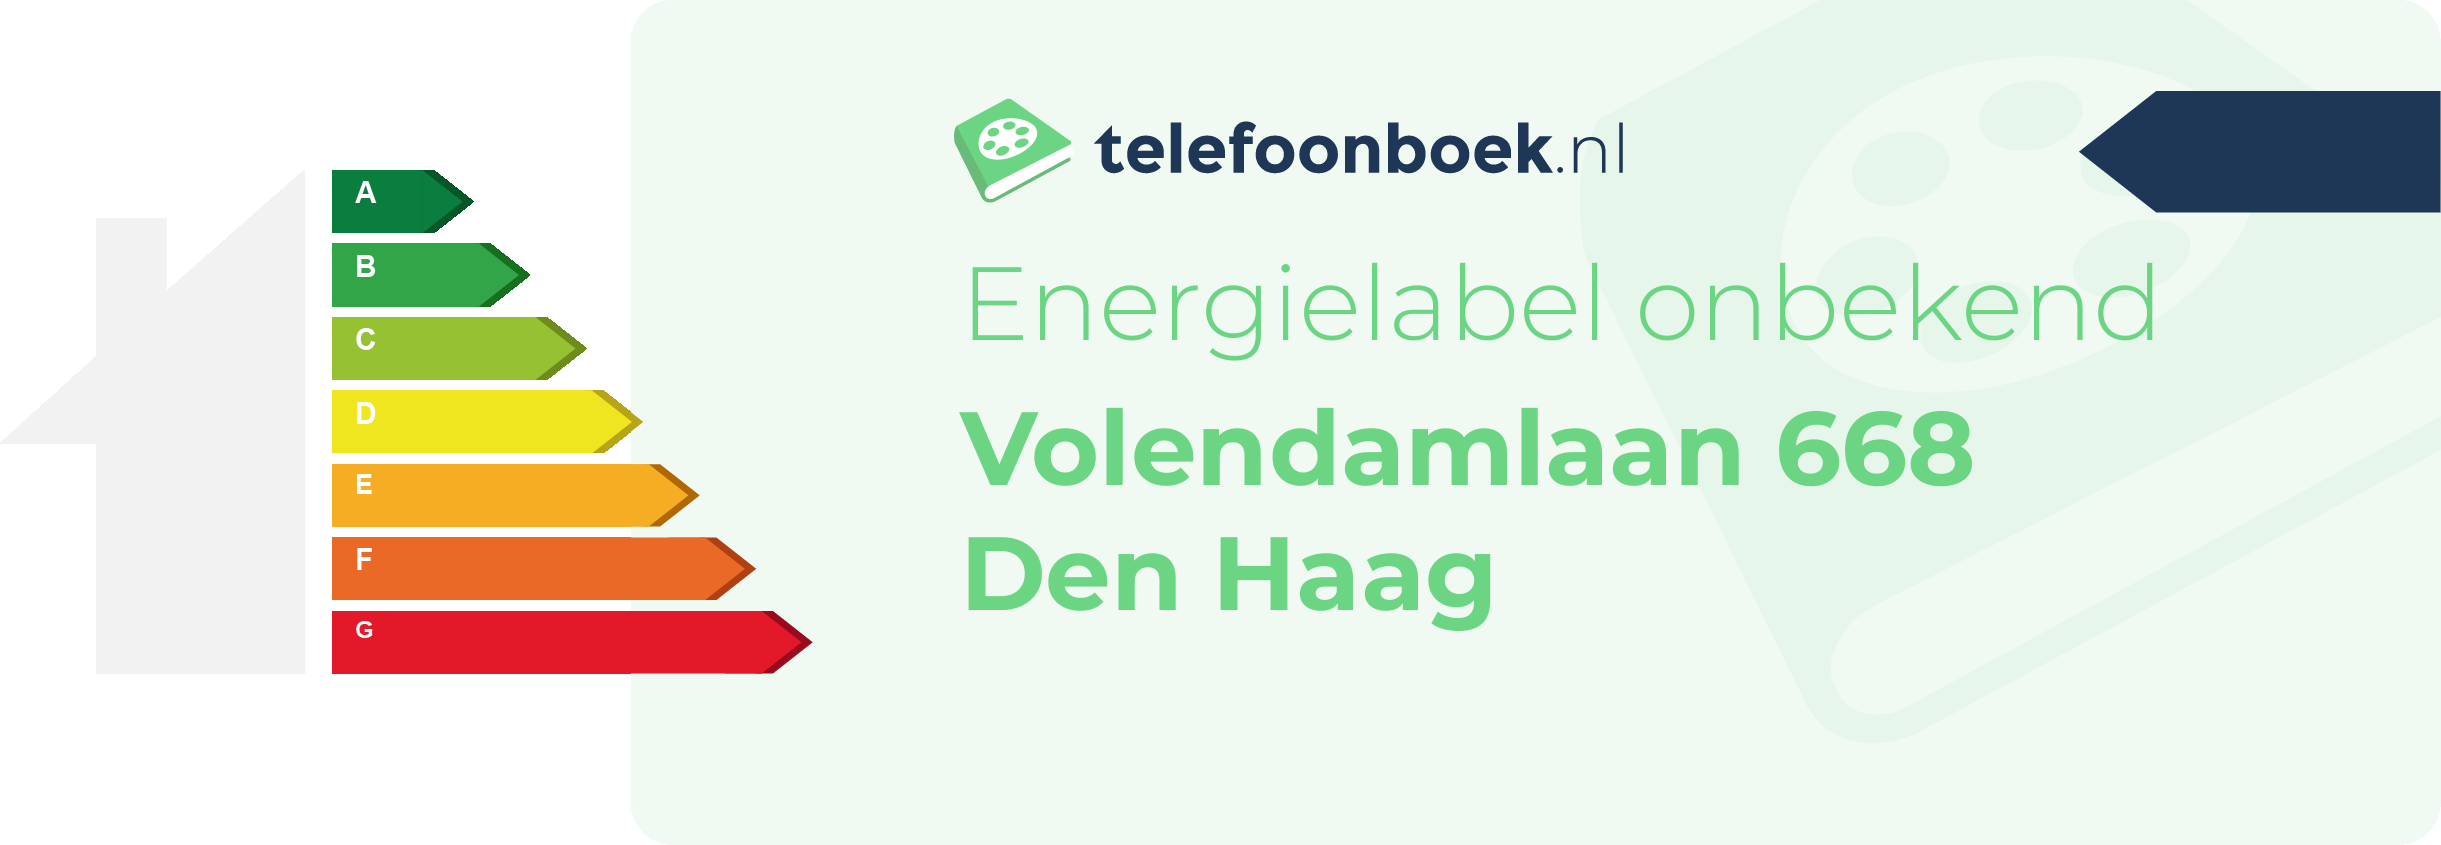 Energielabel Volendamlaan 668 Den Haag